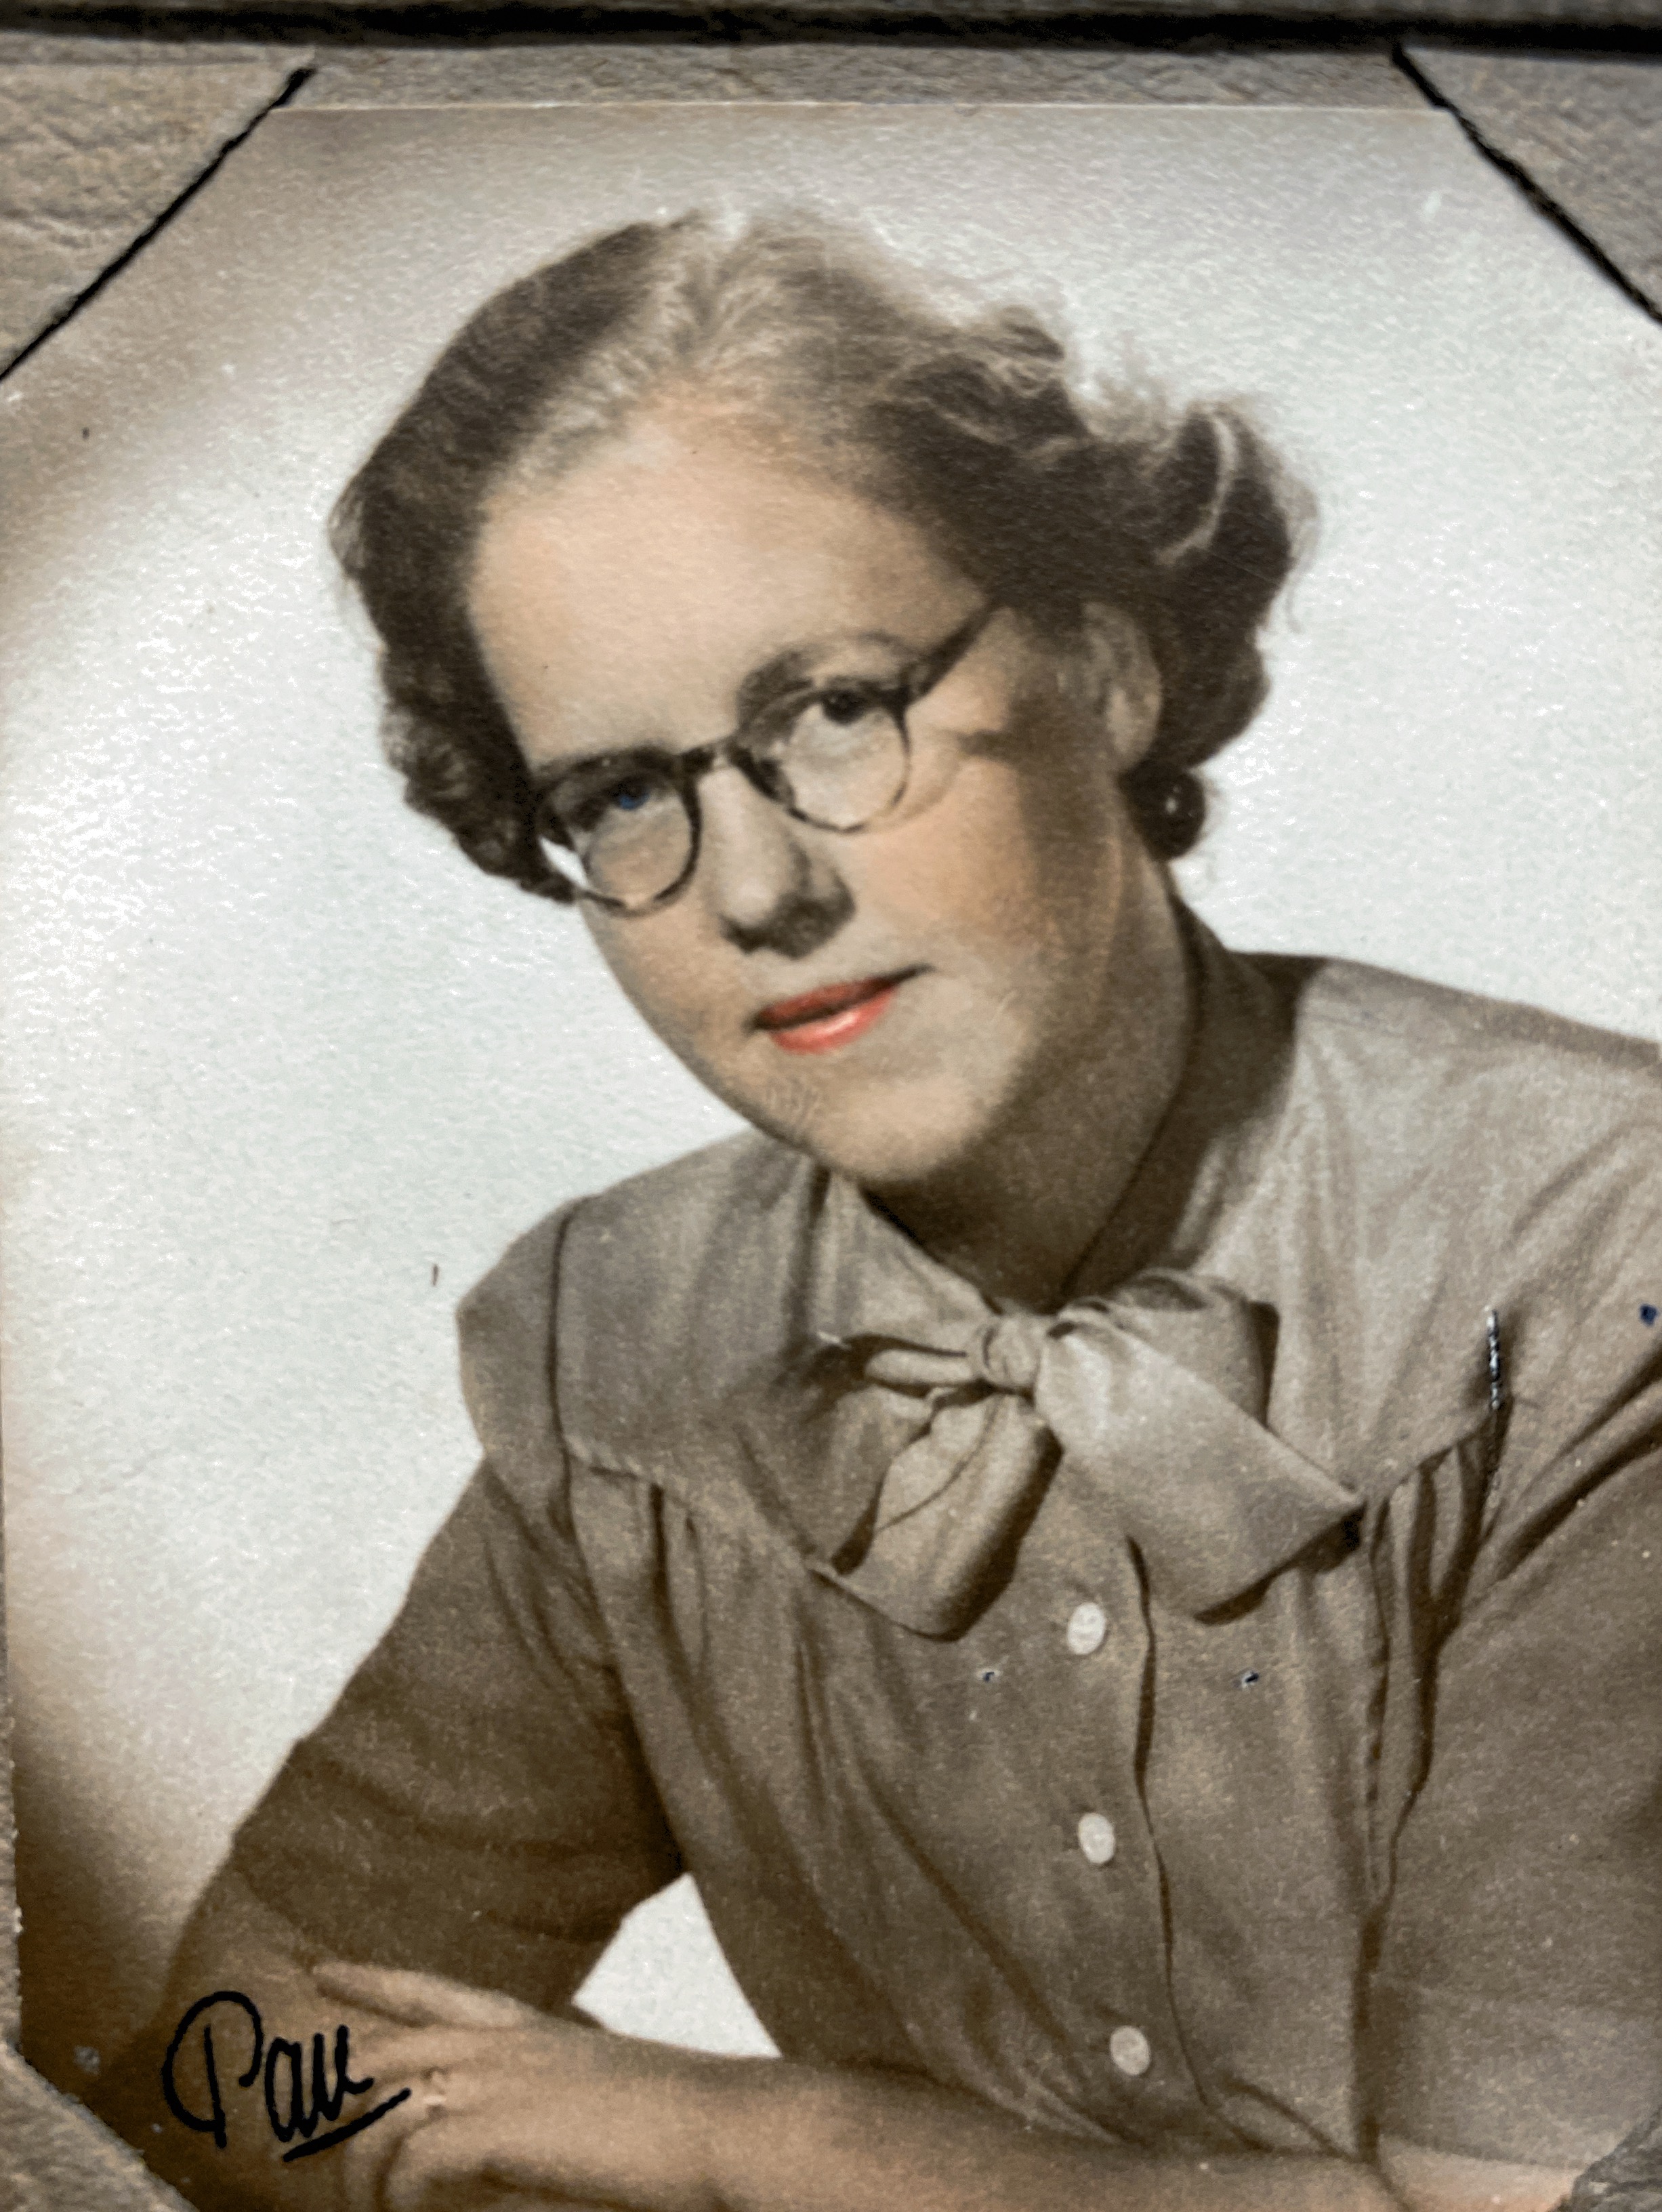 My mother Marianne Brage 1943, Stockholm, Sweden